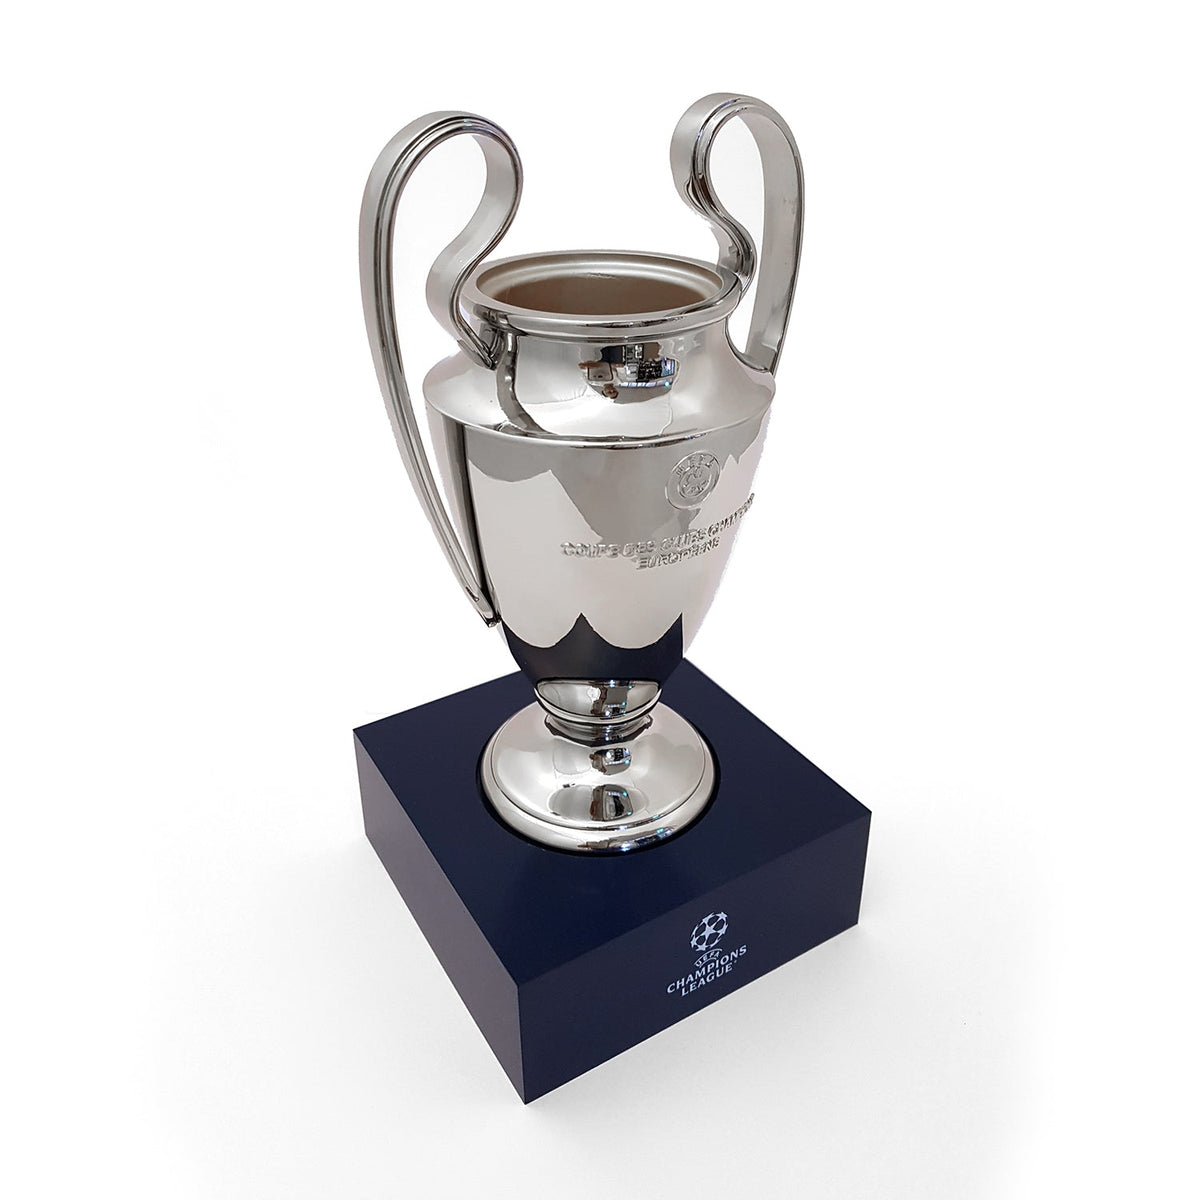 Trophée officiel réplique 3D de l'UEFA Champions League (150 mm)